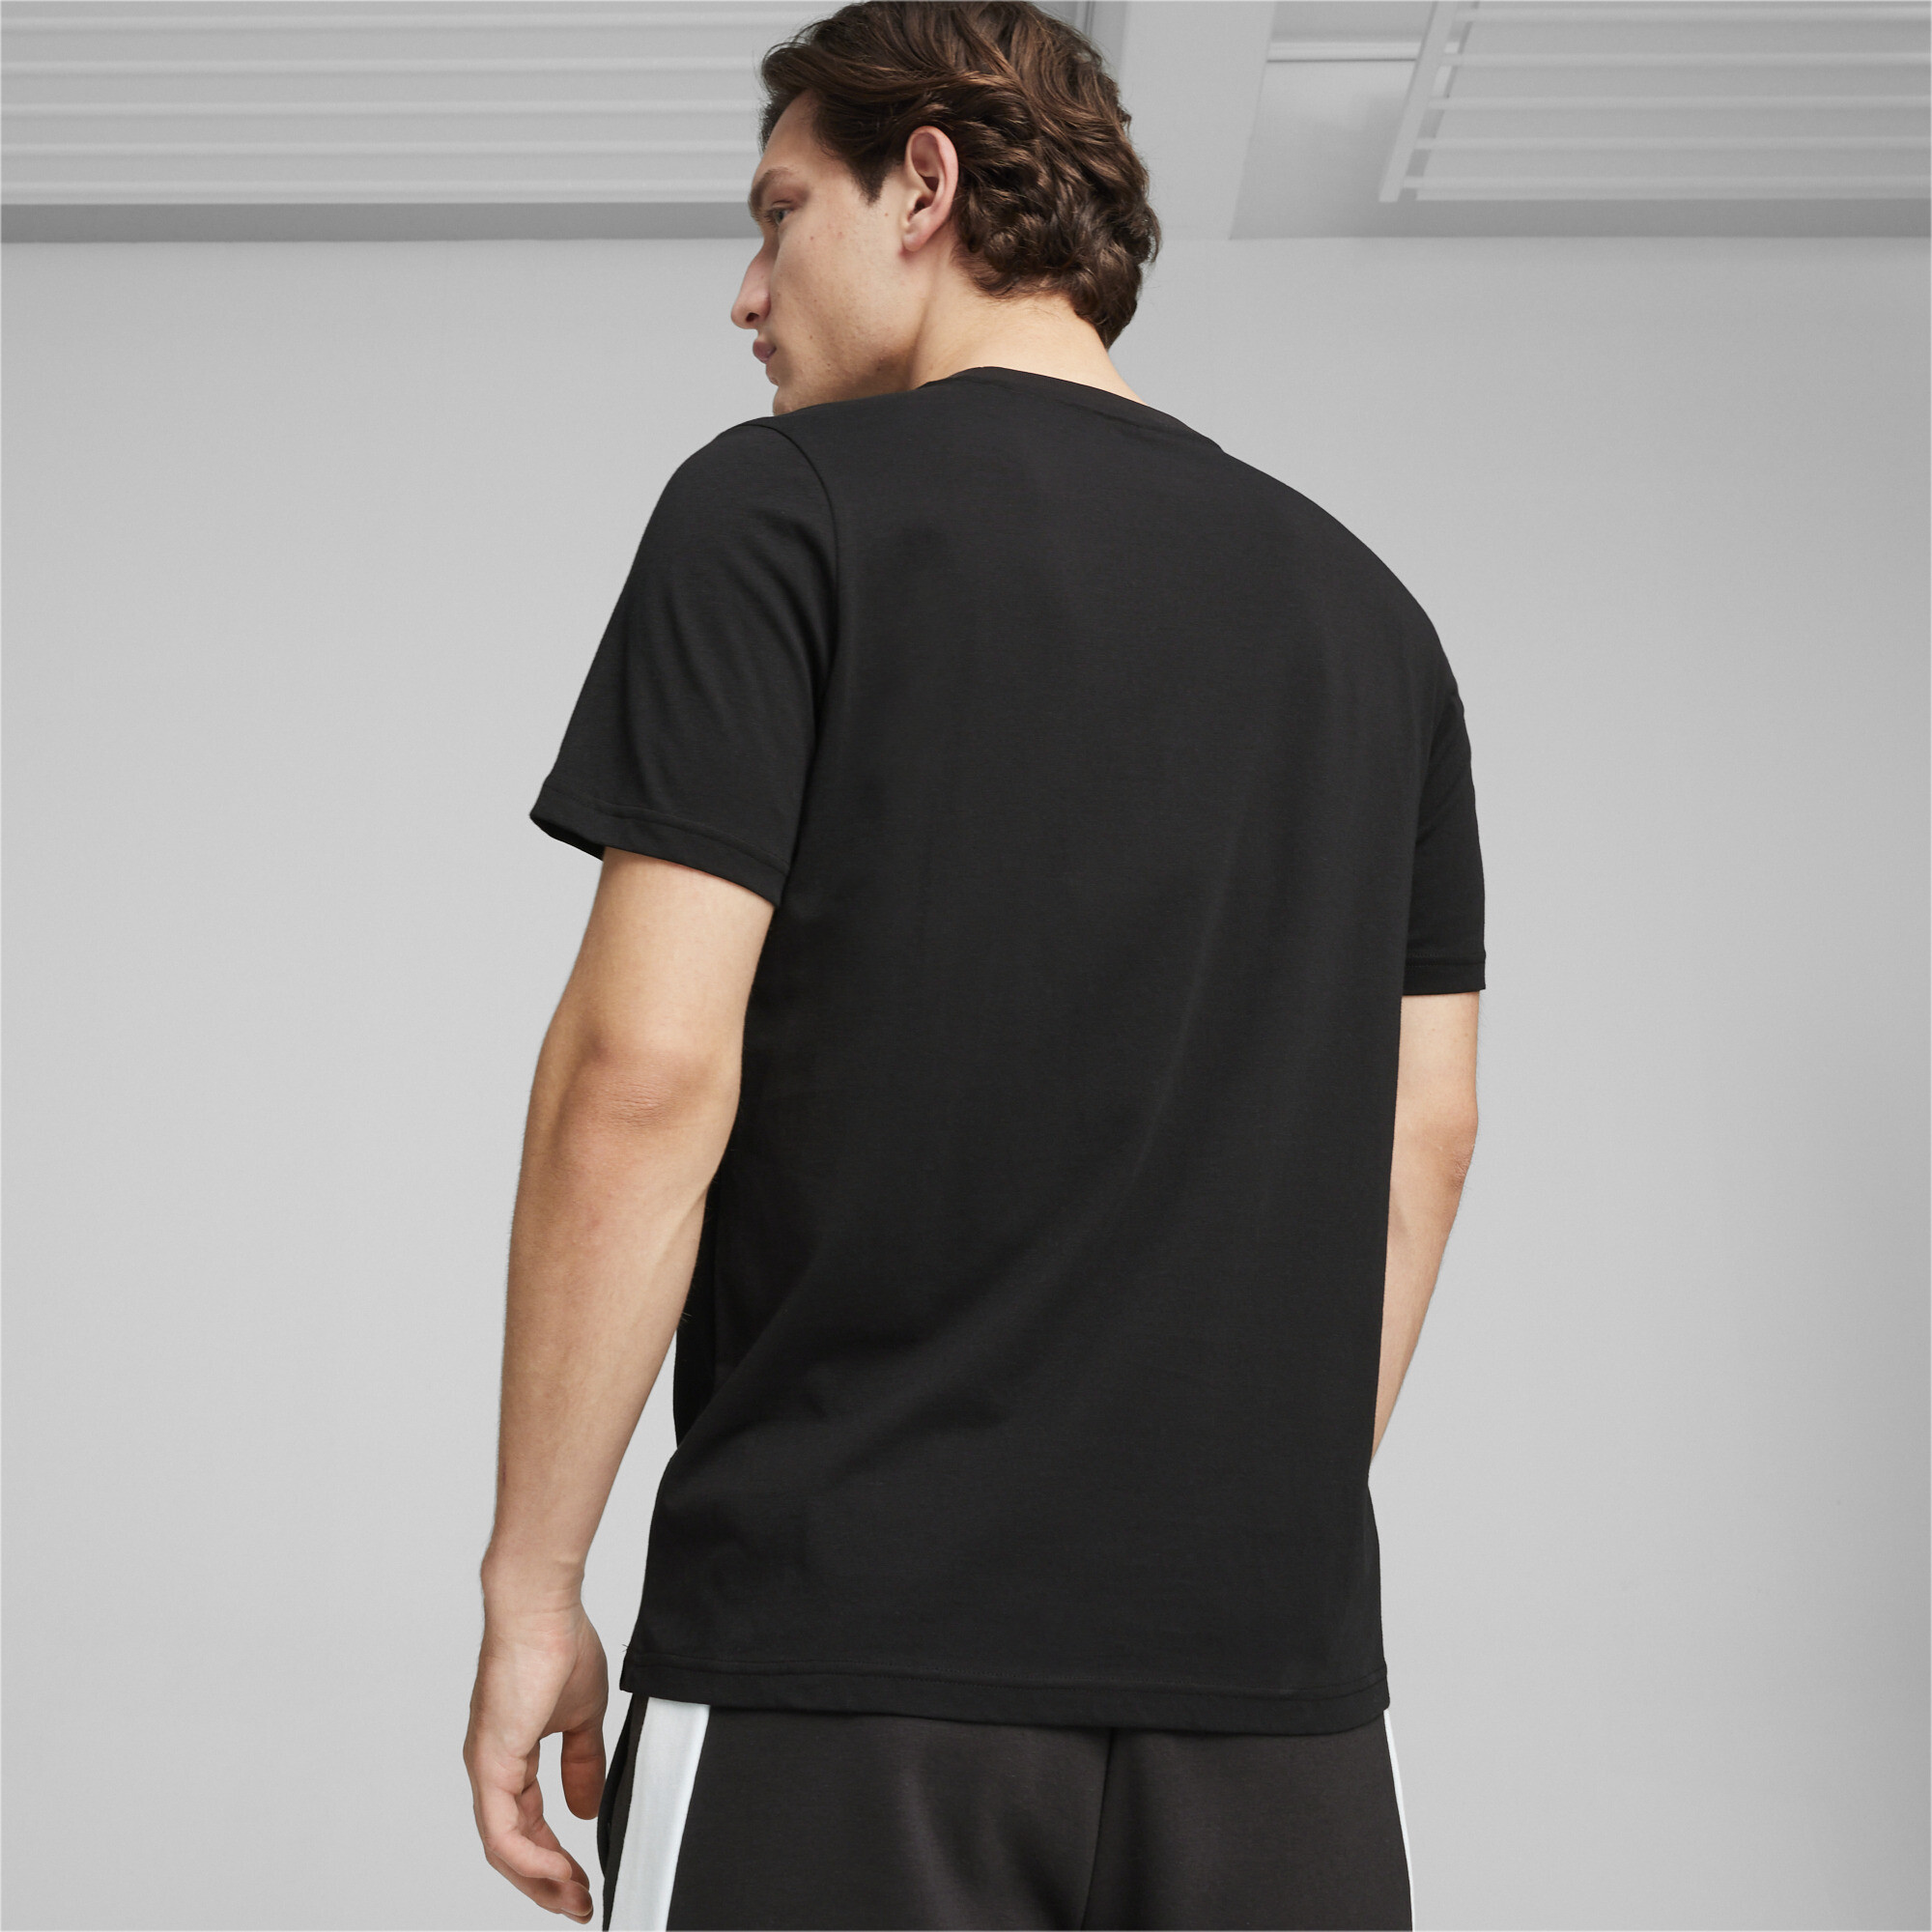 Men's Puma AMG Motorsports T-Shirt, Black, Size XS, Clothing